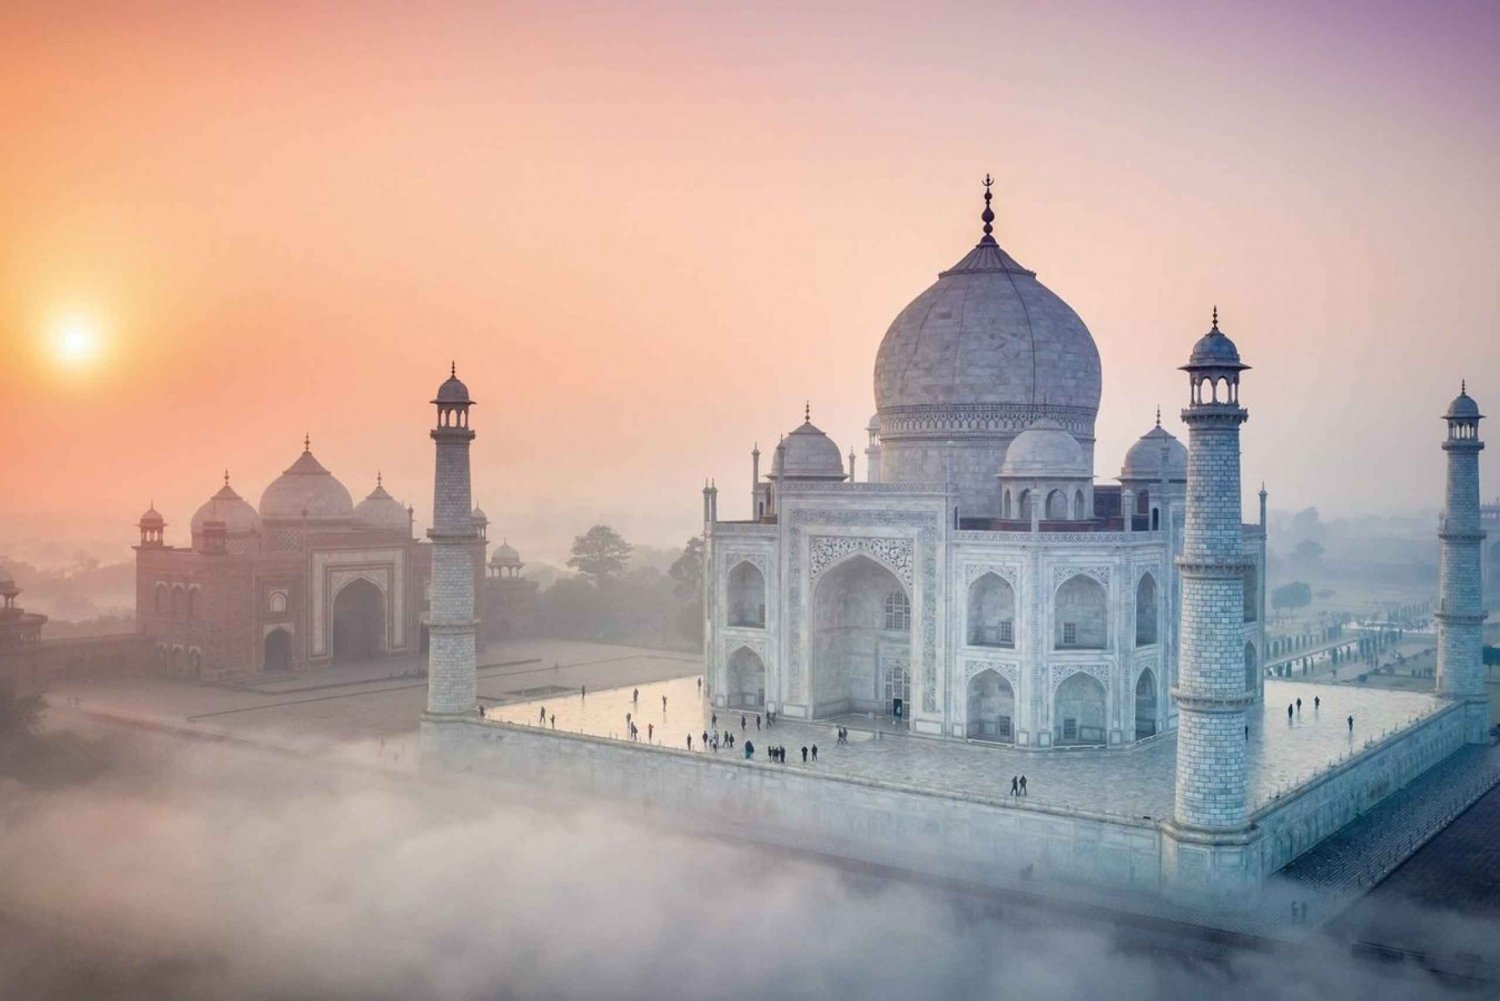 De Délhi: Viagem de um dia particular ao nascer do sol do Taj Mahal e ao Forte de Agra